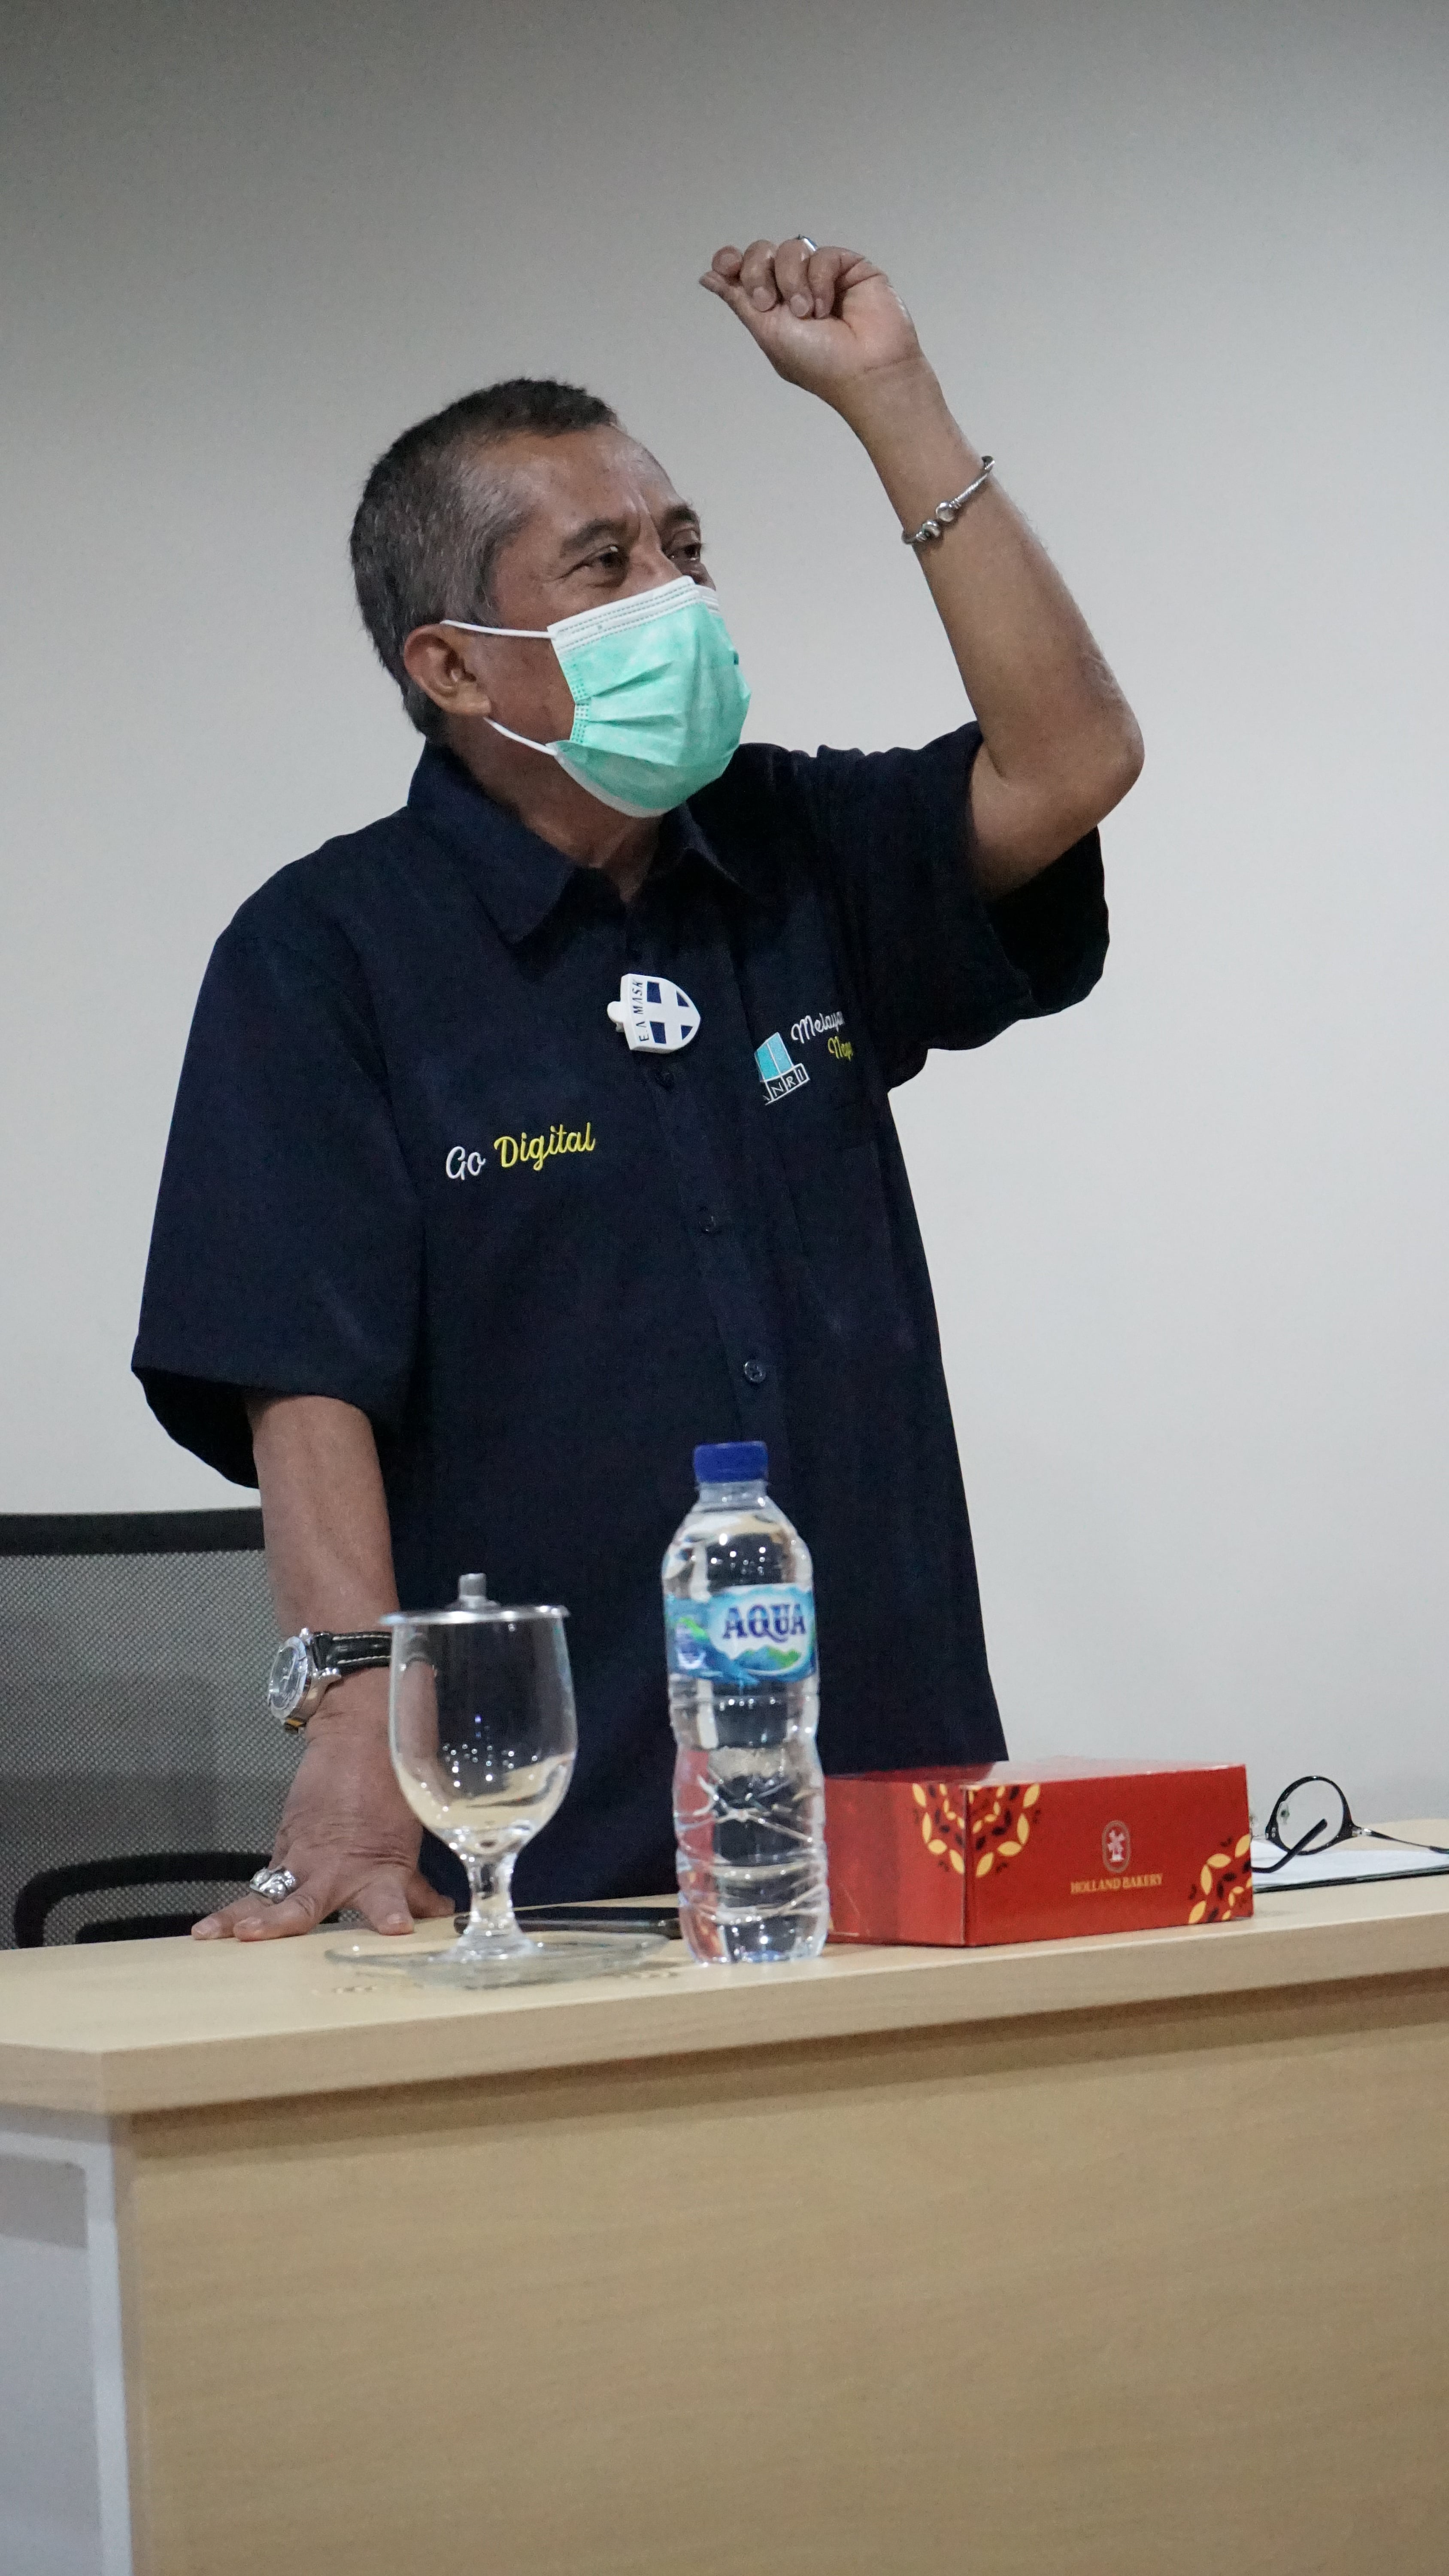 Bimbingan Teknis Pelaksana Penata Arsip dalam Rangkaian Kerja Sama Penataan Arsip PT Pelindo II (Persero) Cabang Jambi